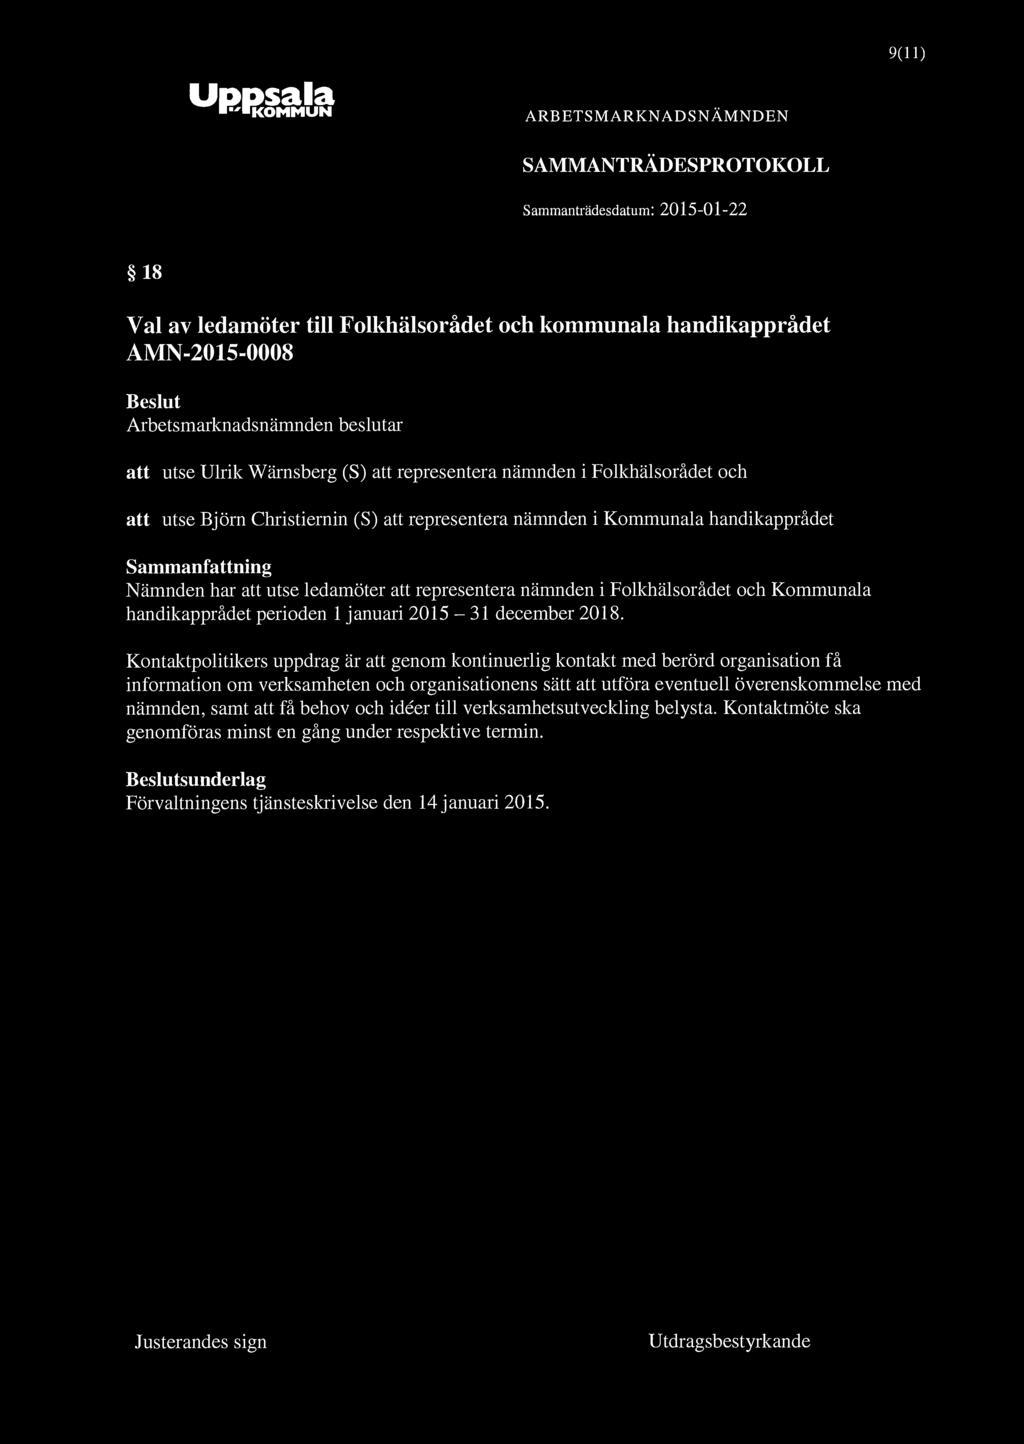 Uppsala "KOMMUN 9(11) 18 Val av ledamöter till Folkhälsorådet och kommunala handikapprådet AMN-2015-0008 Arbetsmarknadsnämnden beslutar att utse Ulrik Wärnsberg (S) att representera nämnden i